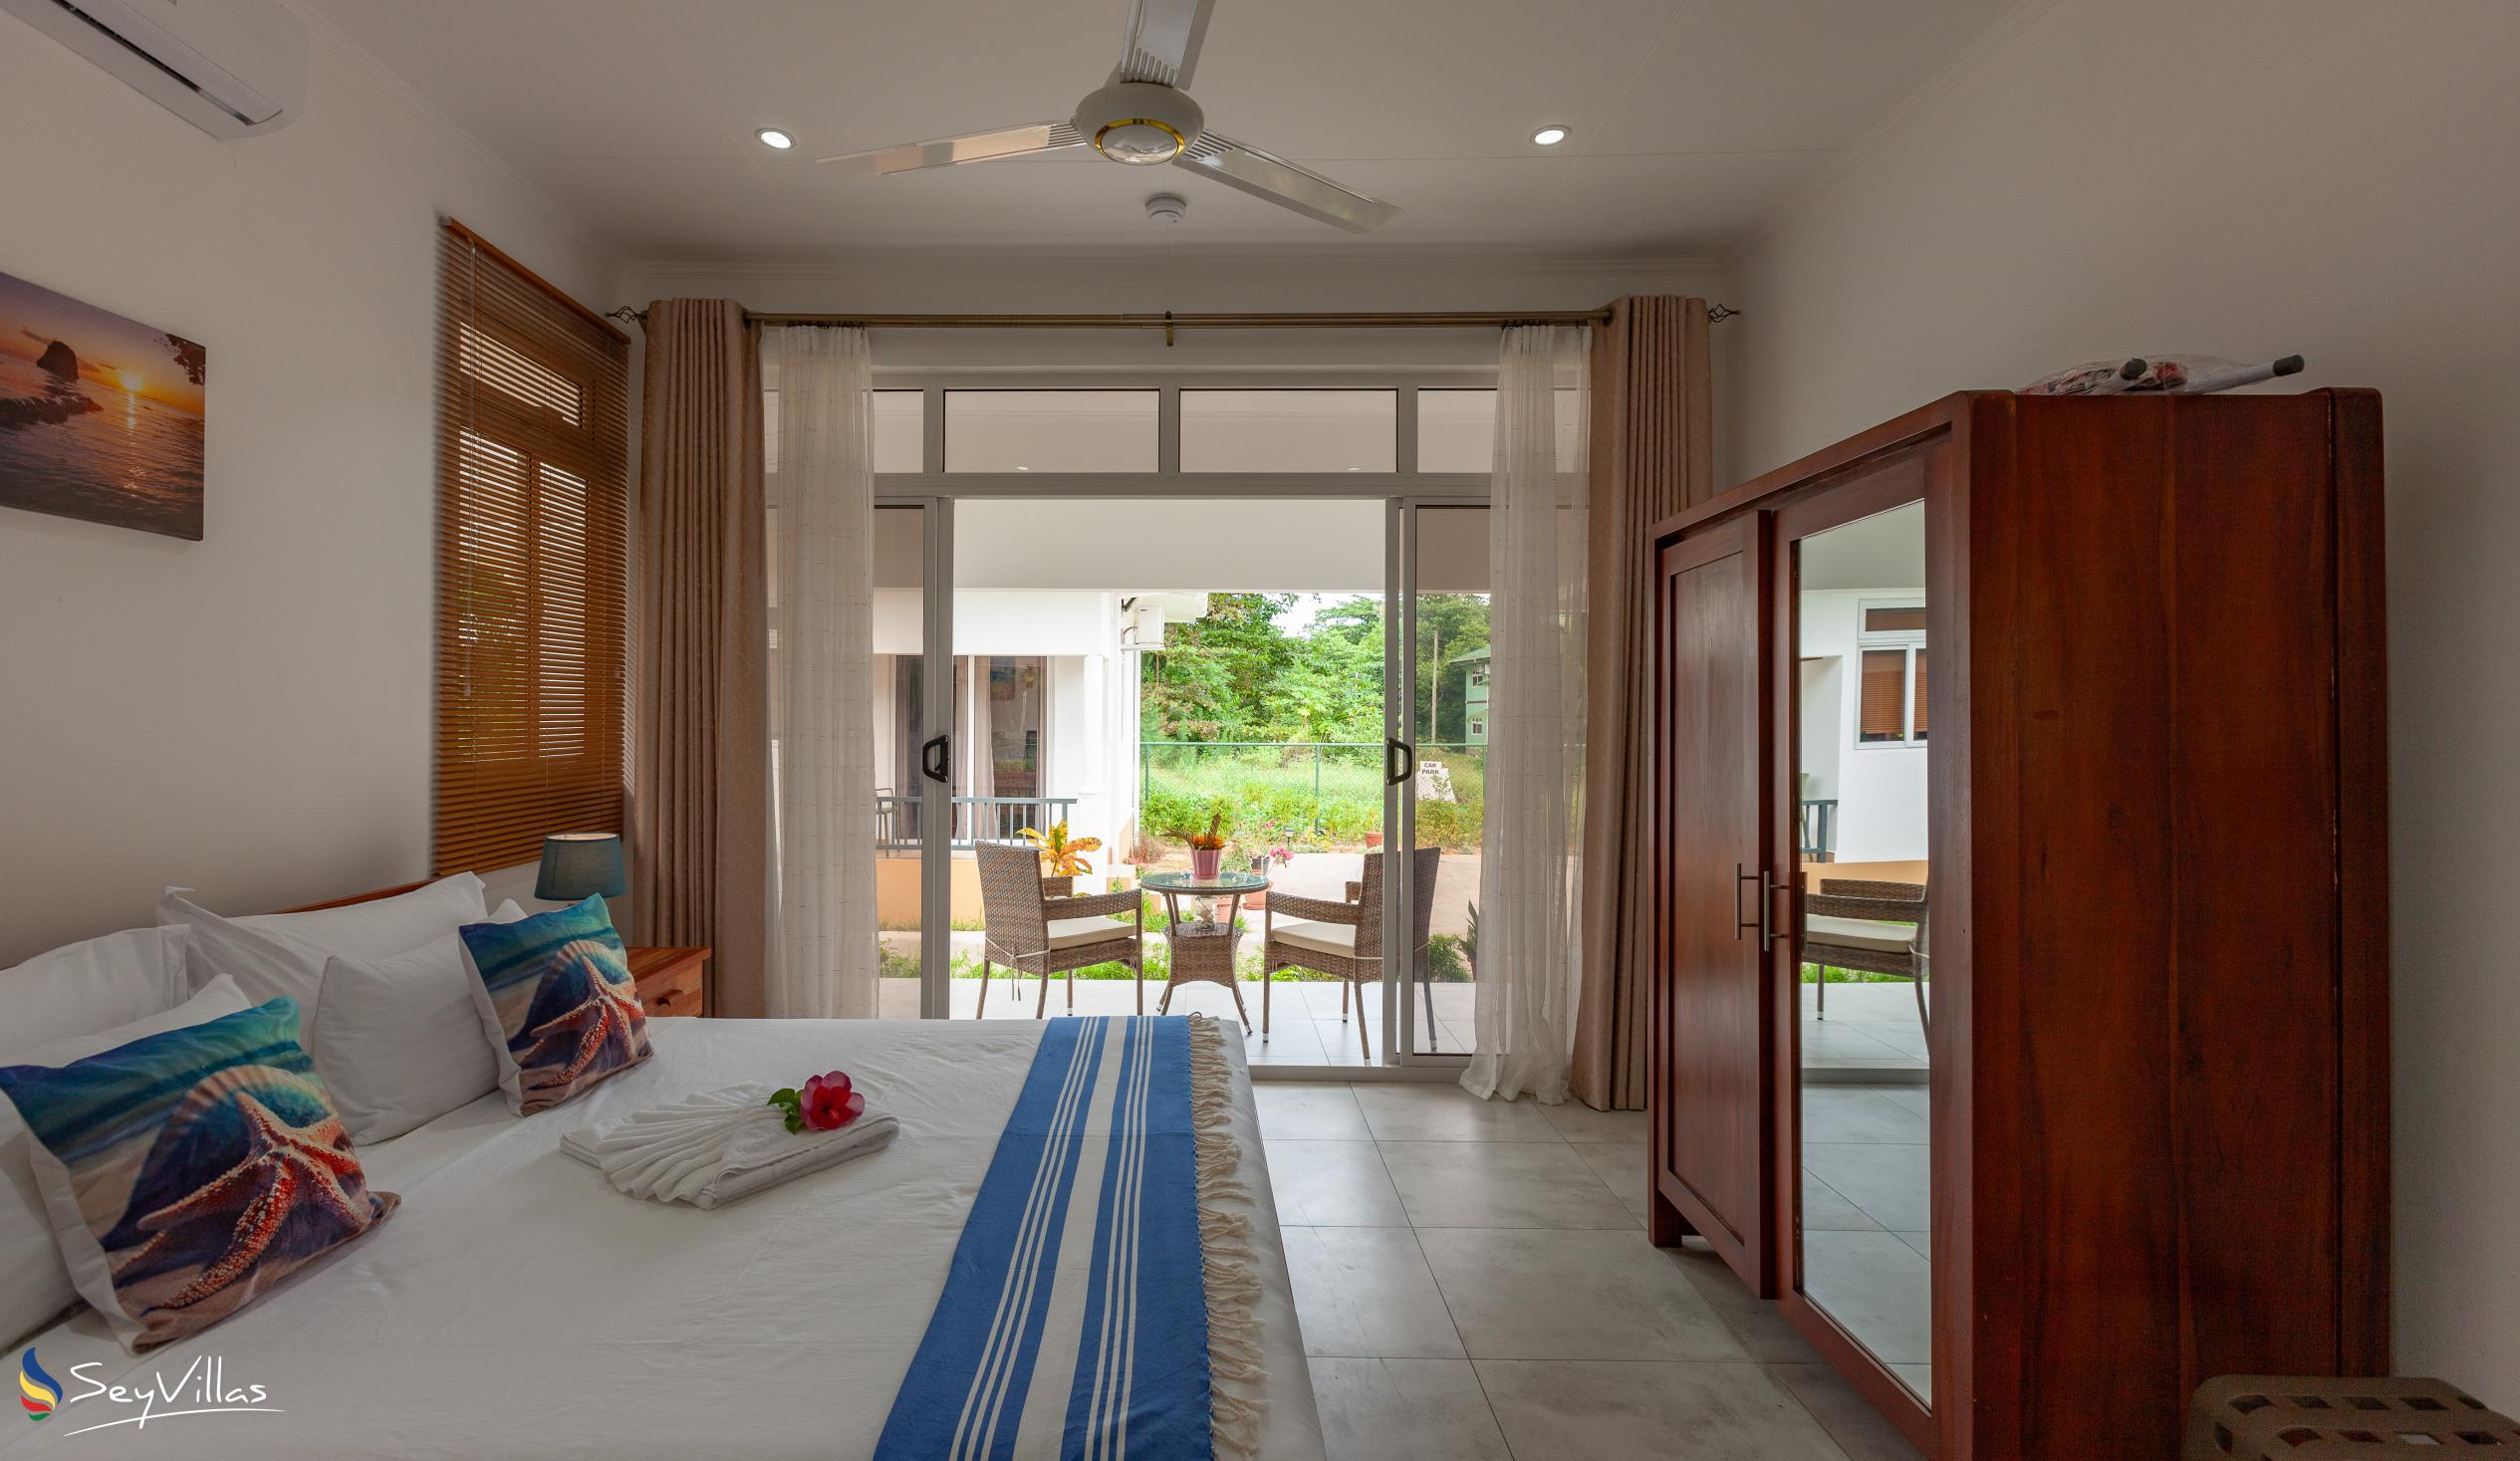 Foto 29: MacMillan's Holiday Villas - Chalet mit 2 Schlafzimmern - Praslin (Seychellen)